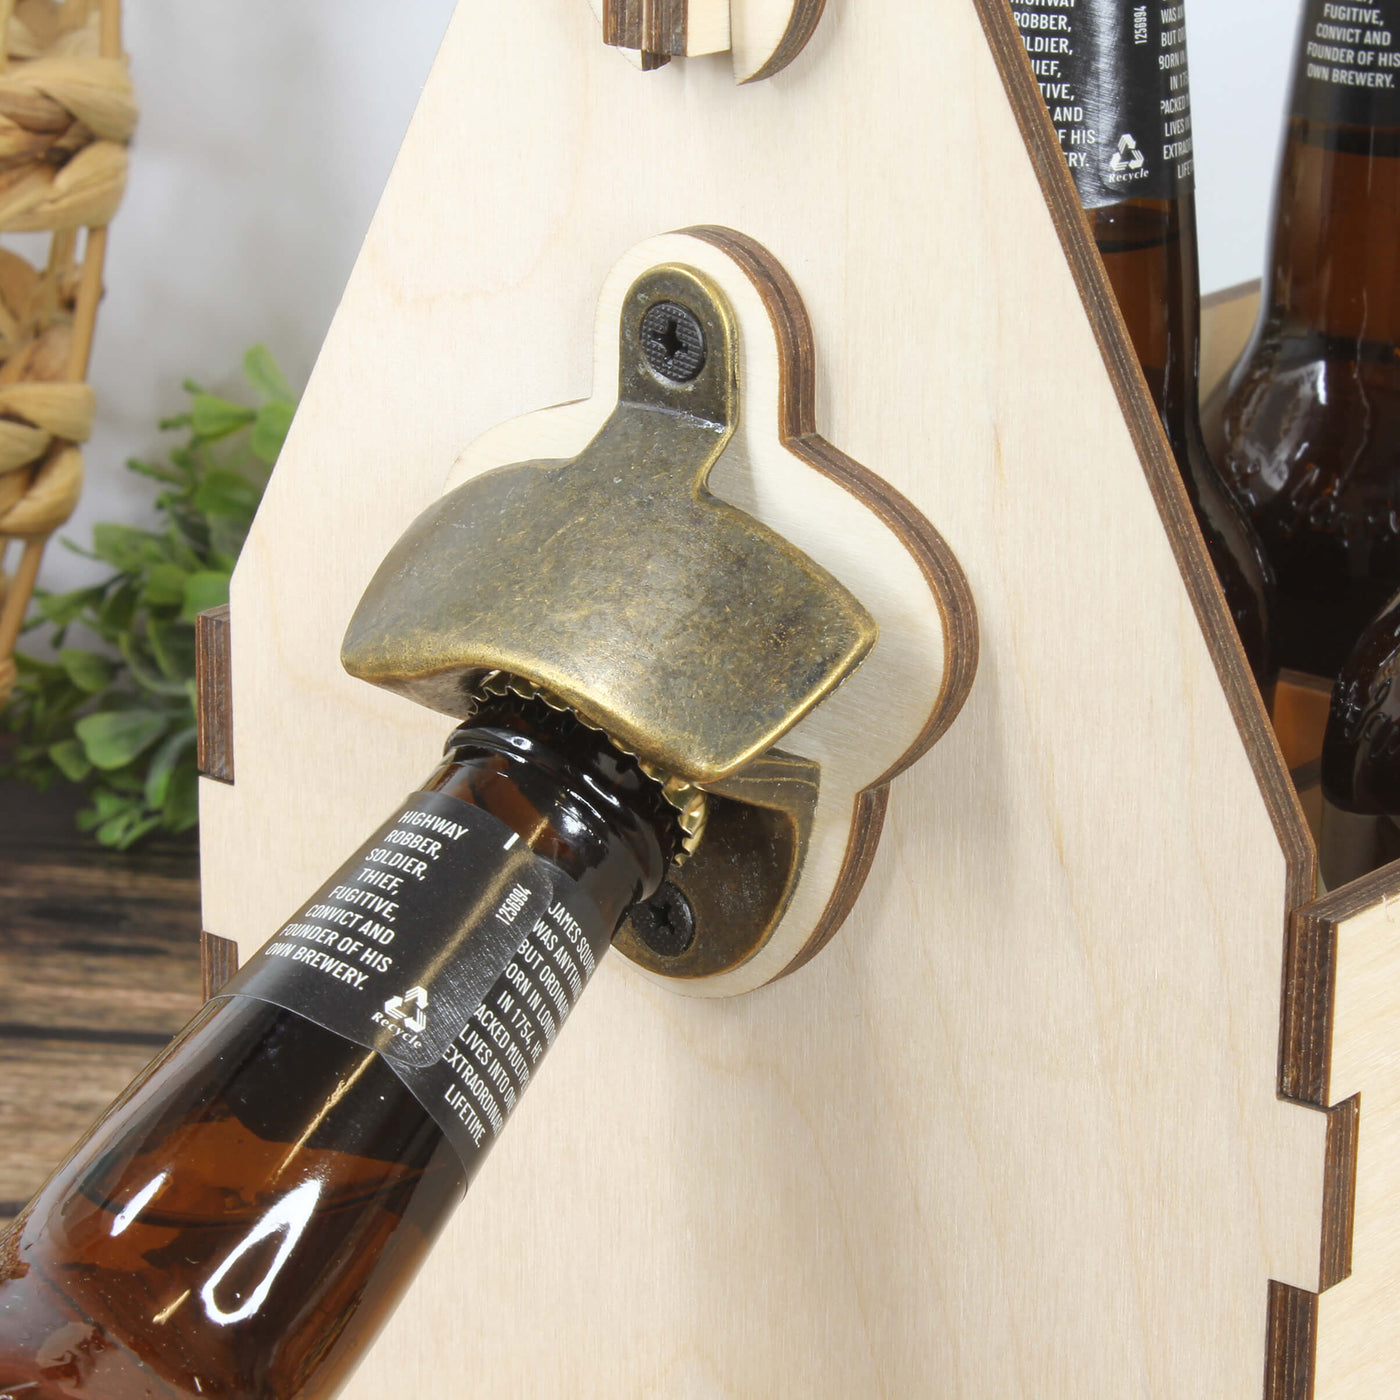 wooden beer caddy